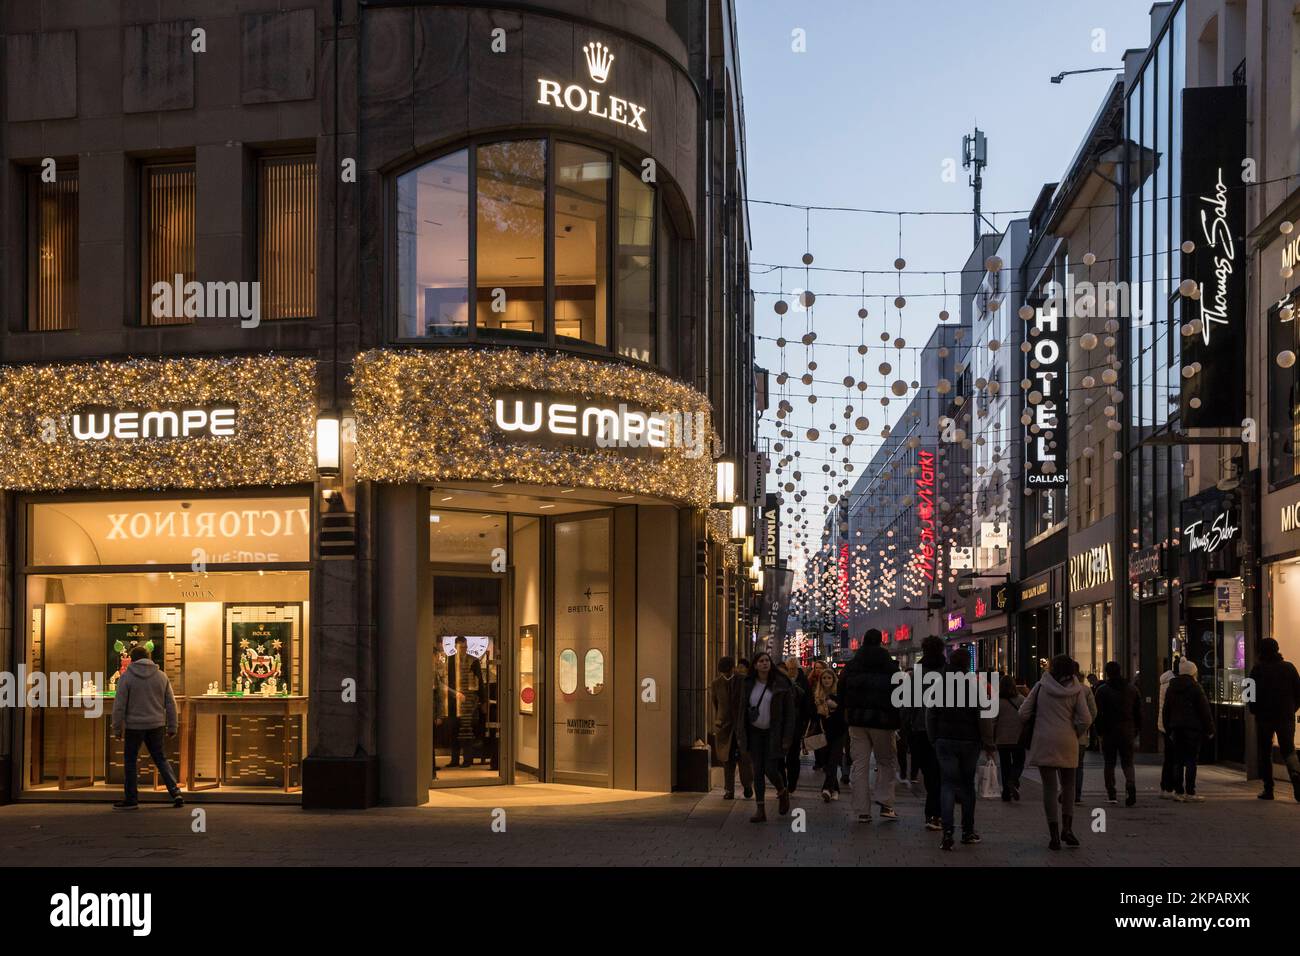 Boutique de bijoutier Wempe sur la rue commerçante Hohe Stasse / Am Hof, Cologne, Allemagne. Juwelier Wempe auf der Einkaufsstrasse Hohe Strasse / Am Hof, Koeln, D. Banque D'Images